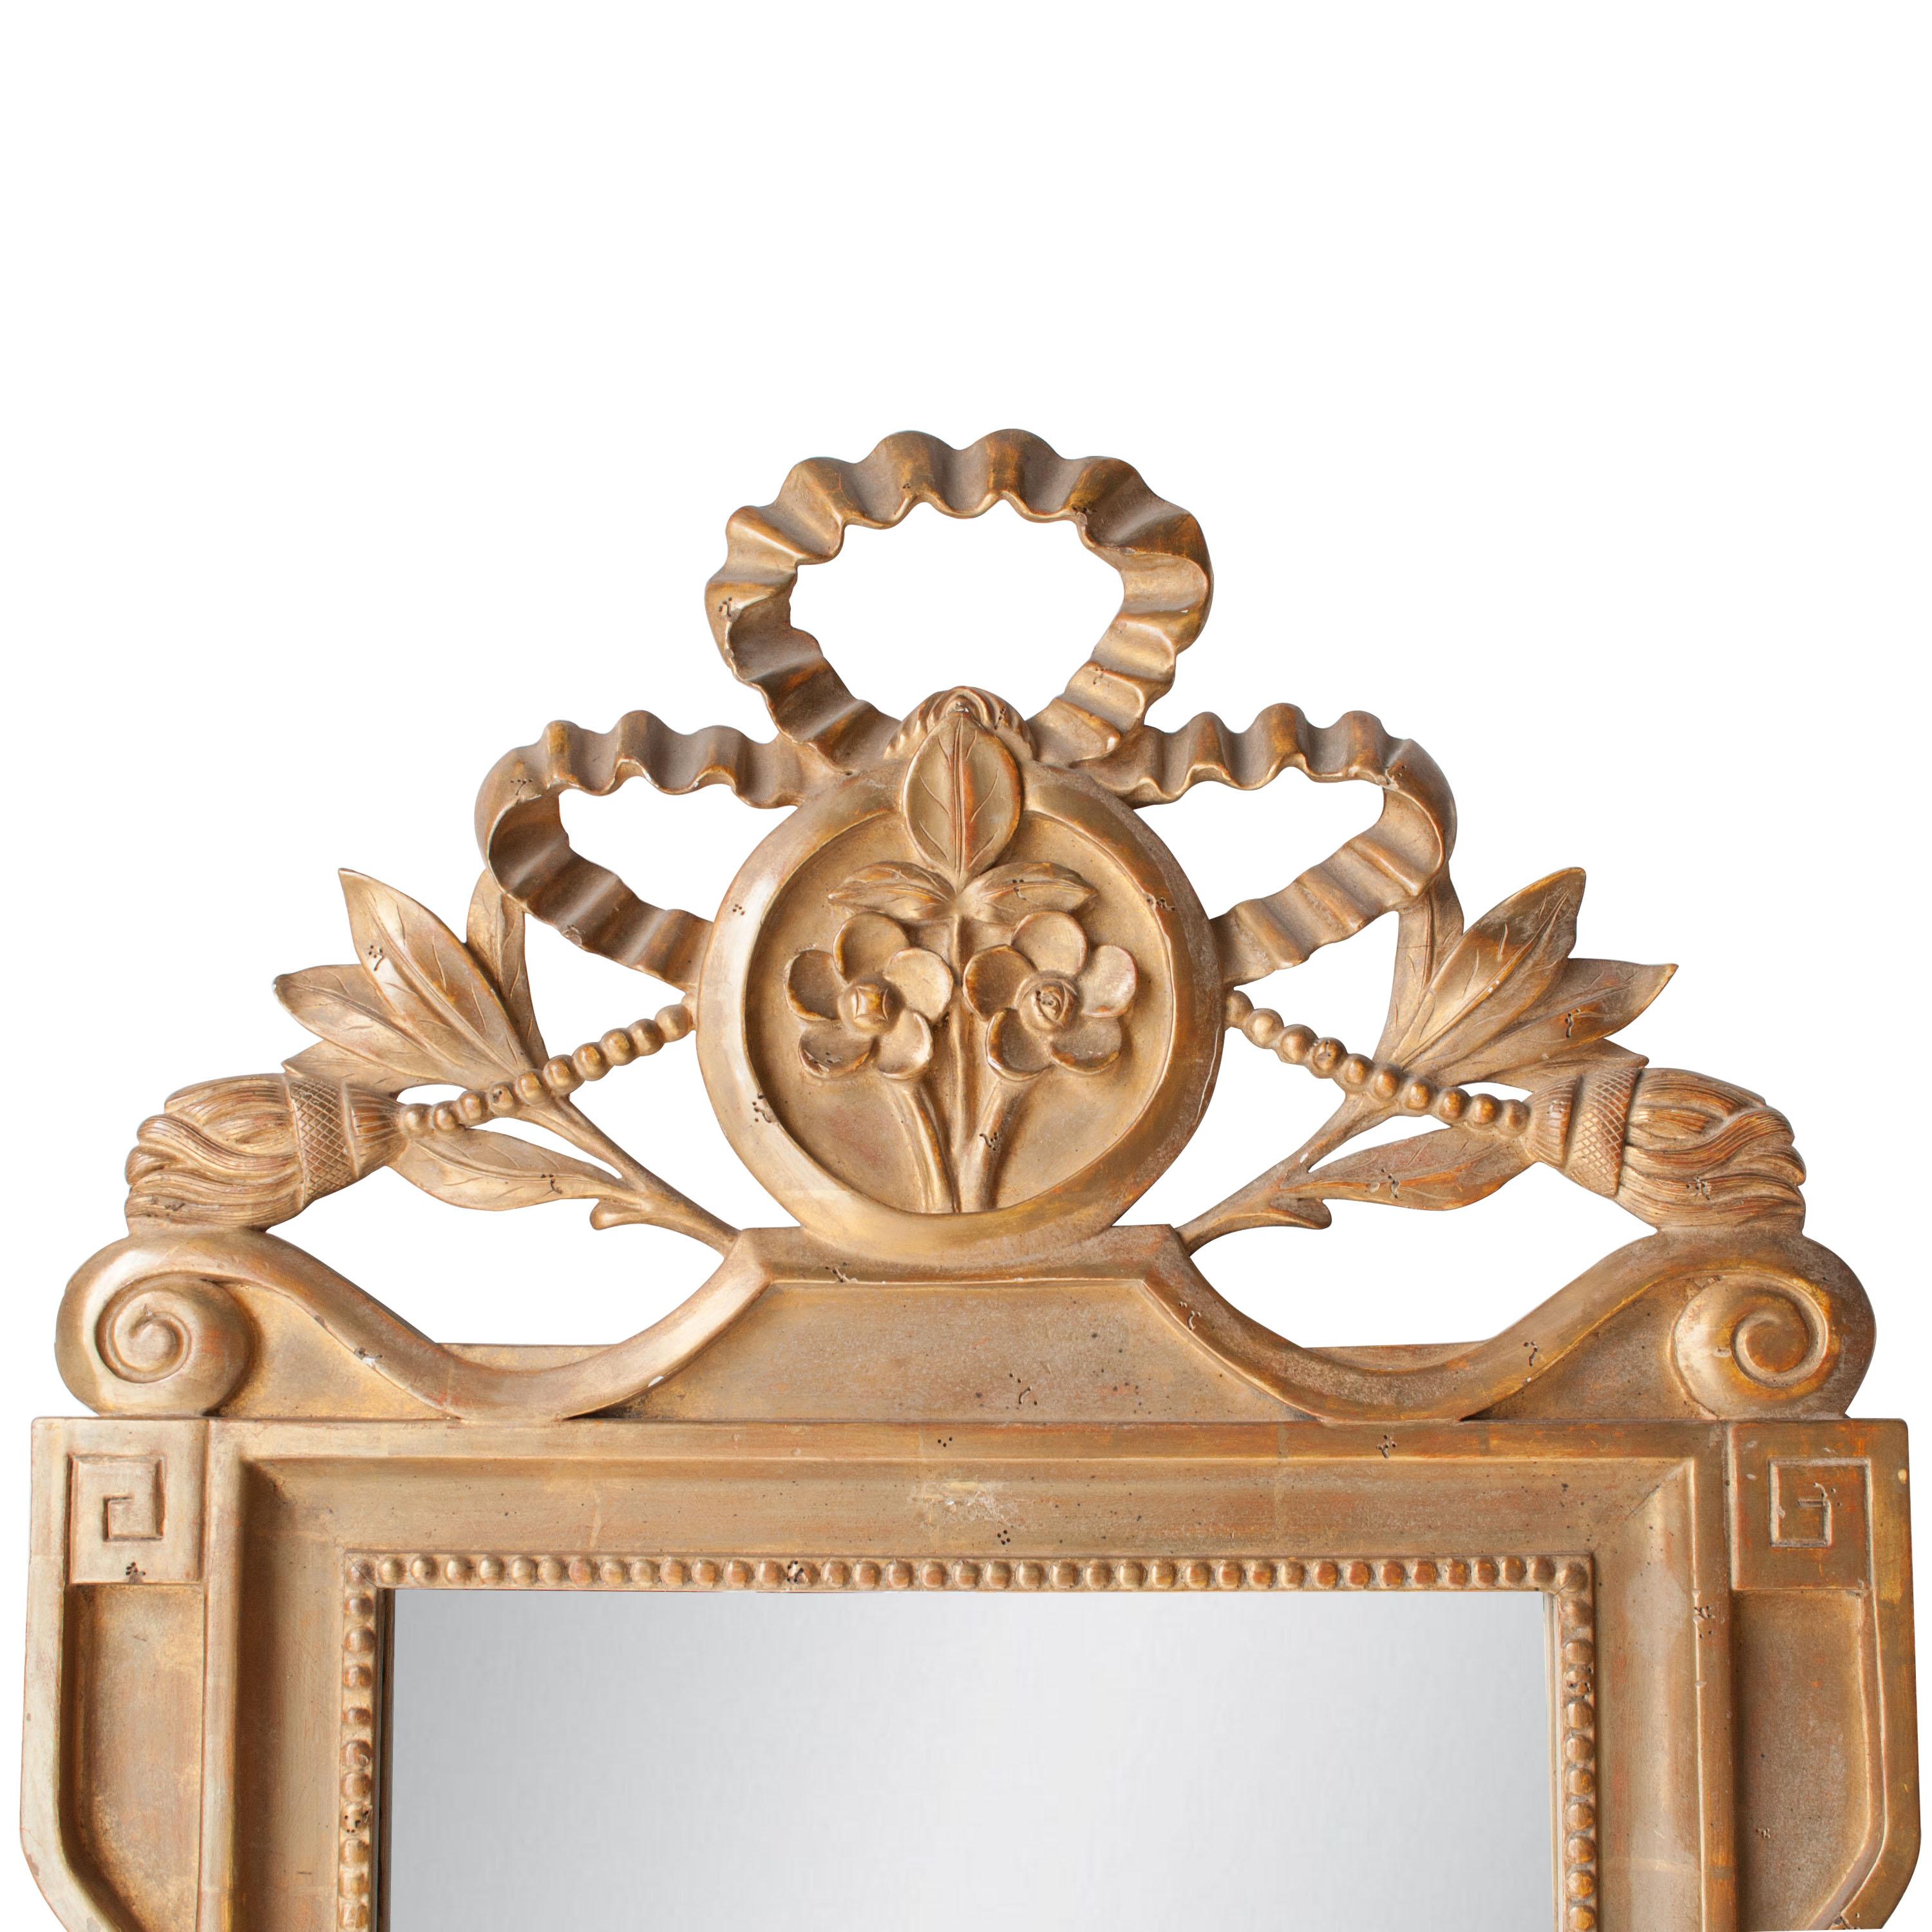 Handgefertigter Spiegel im neoklassizistischen Regency-Stil. Rechteckige, handgeschnitzte Holzstruktur mit Goldfolie überzogen, Spanien, 1970.
   